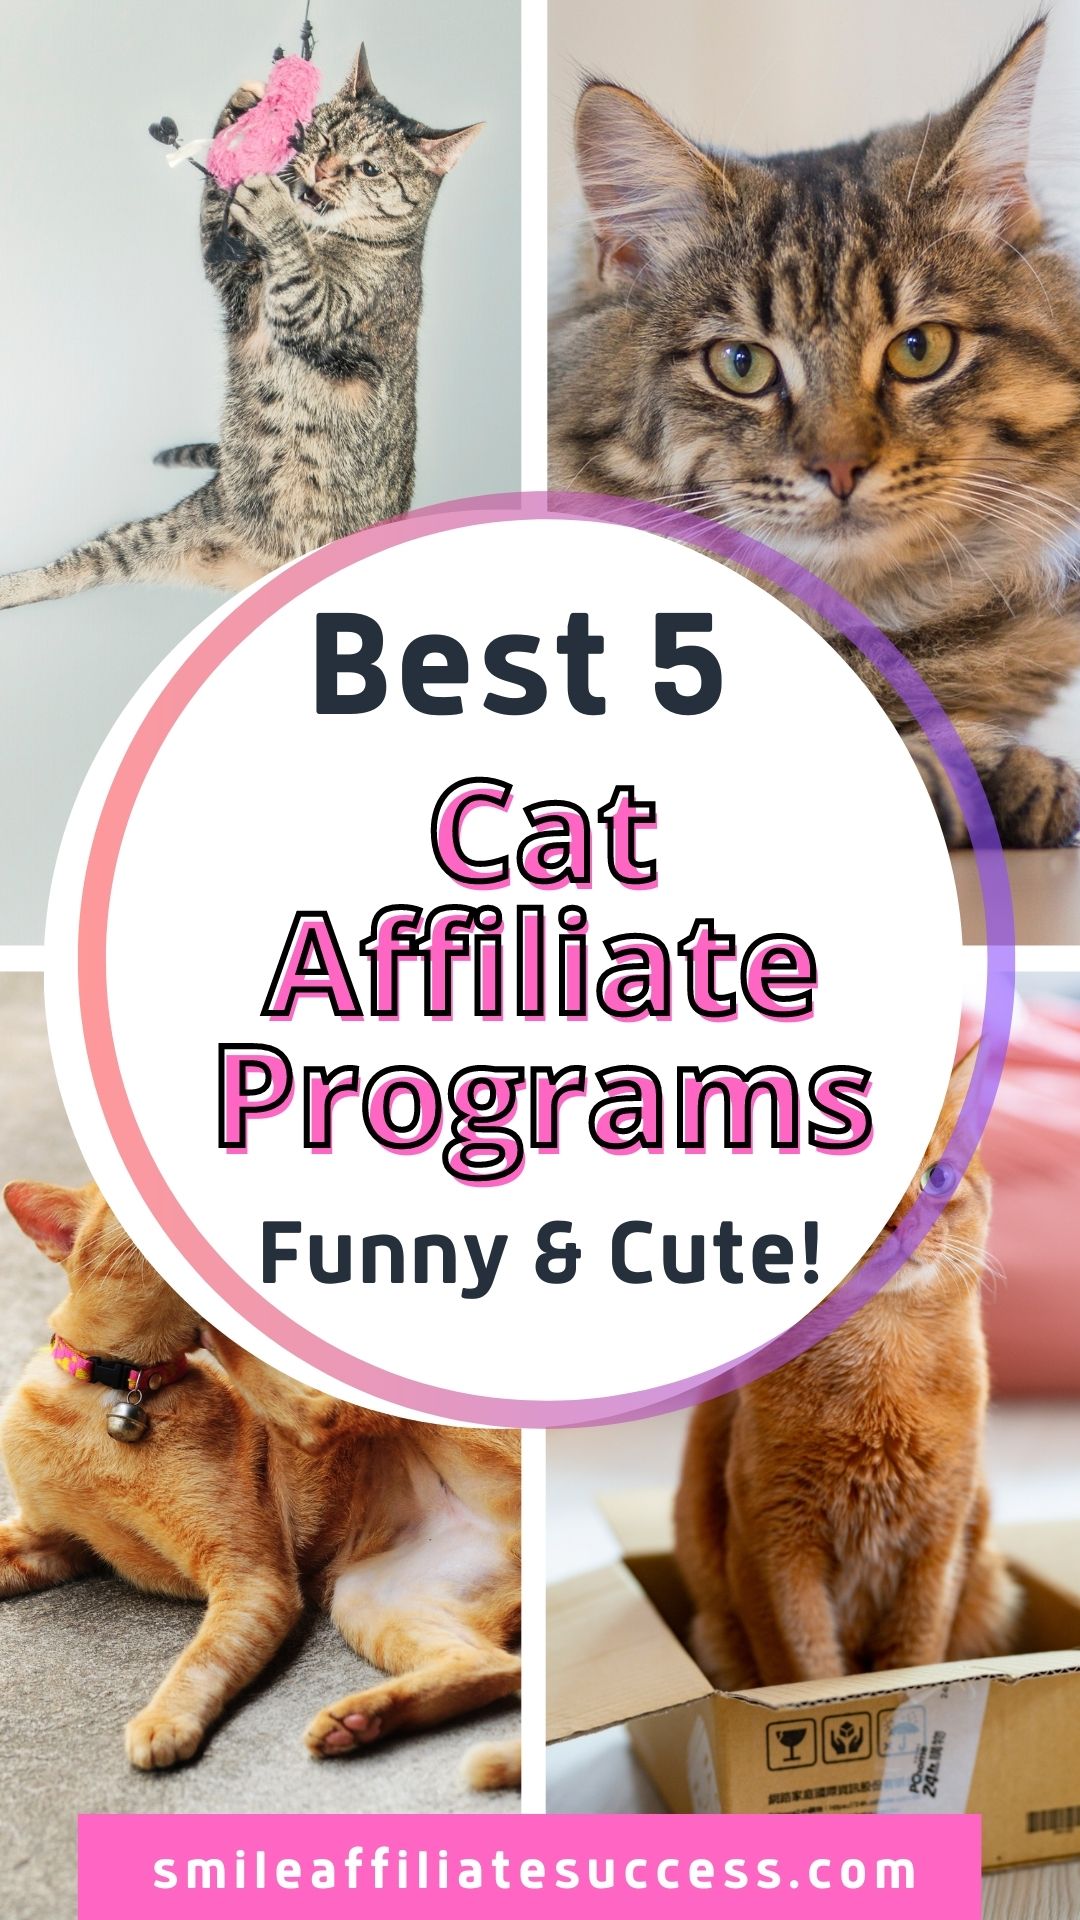 Best 5 Cat Affiliate Programs